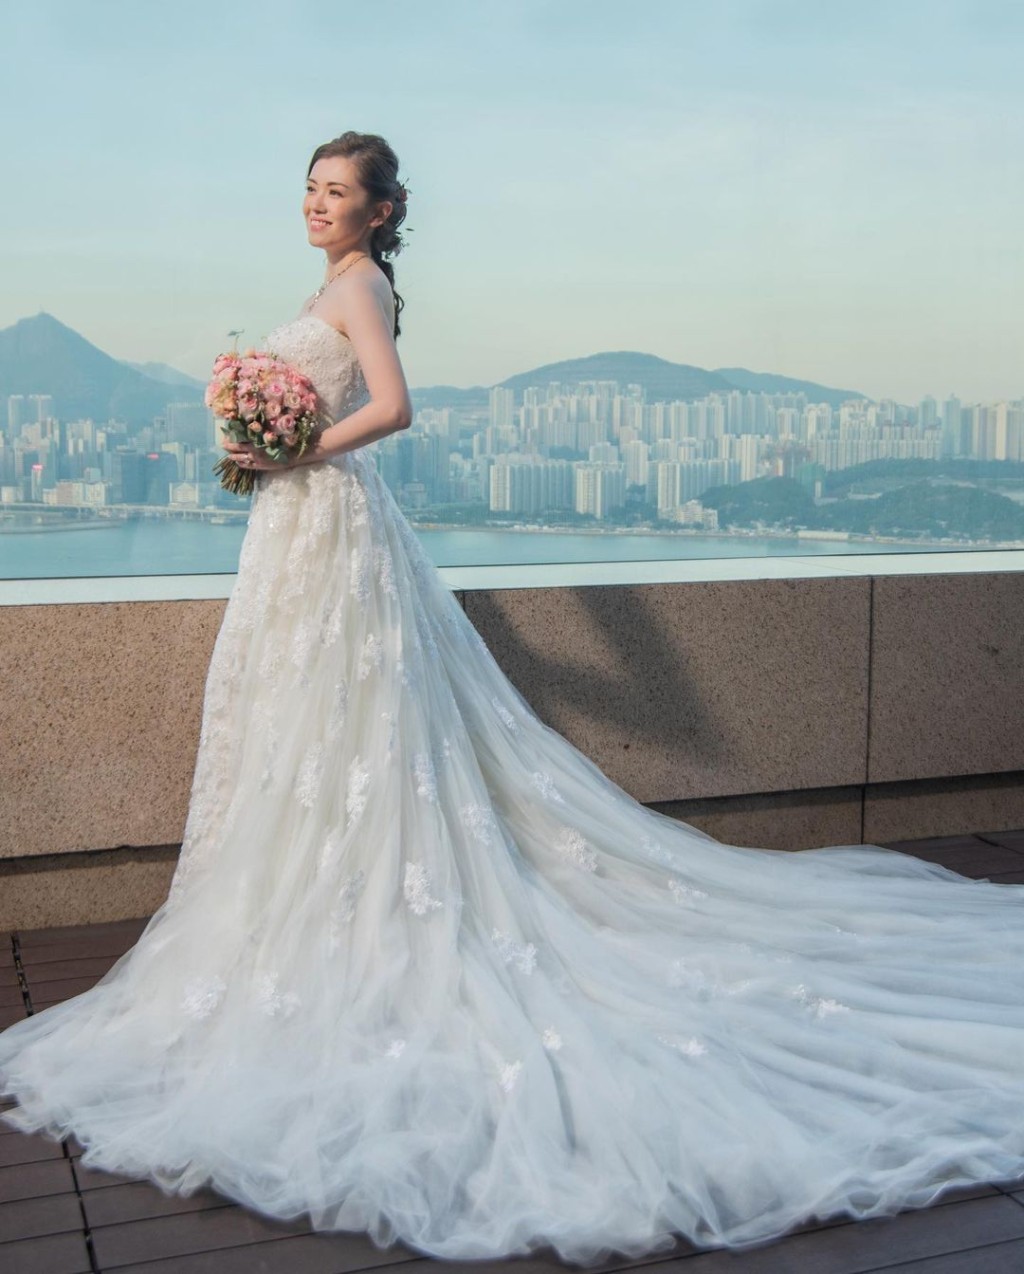 袁文傑與張潔蓮在2020年12月結婚。